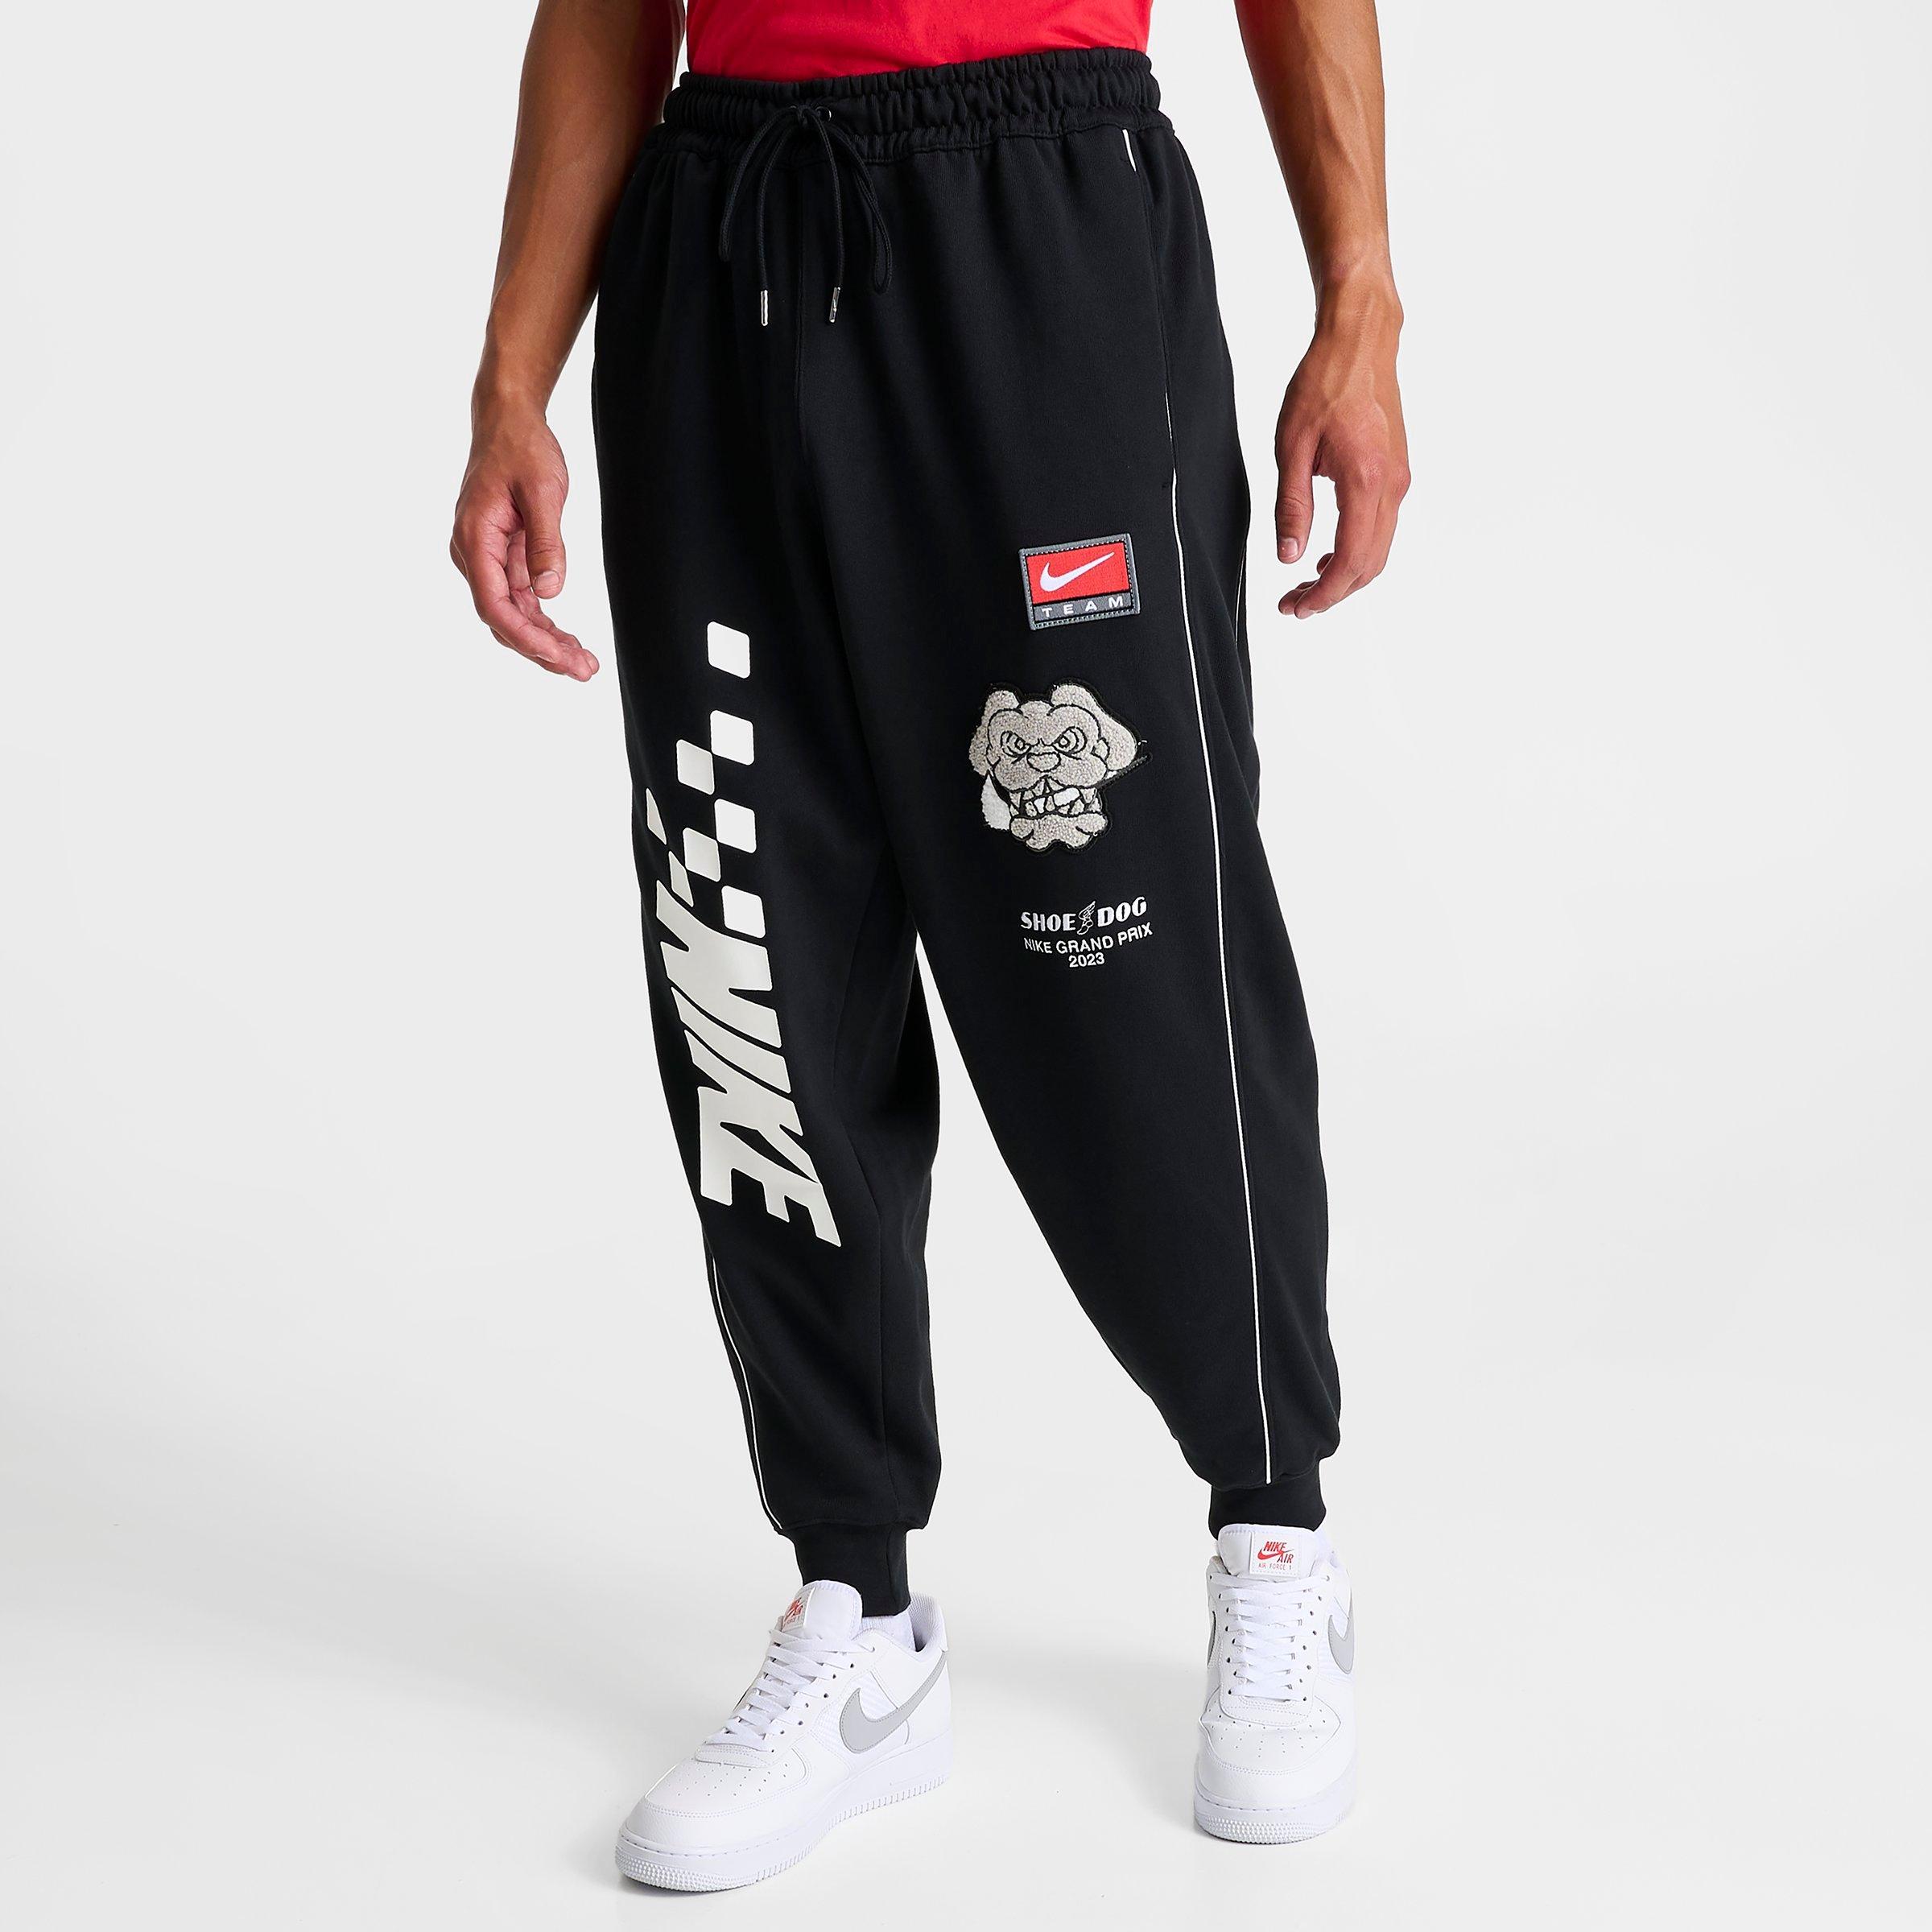 Men's Nike Sportswear Shoe Dog Graphic Fleece Jogger Pants| JD Sports